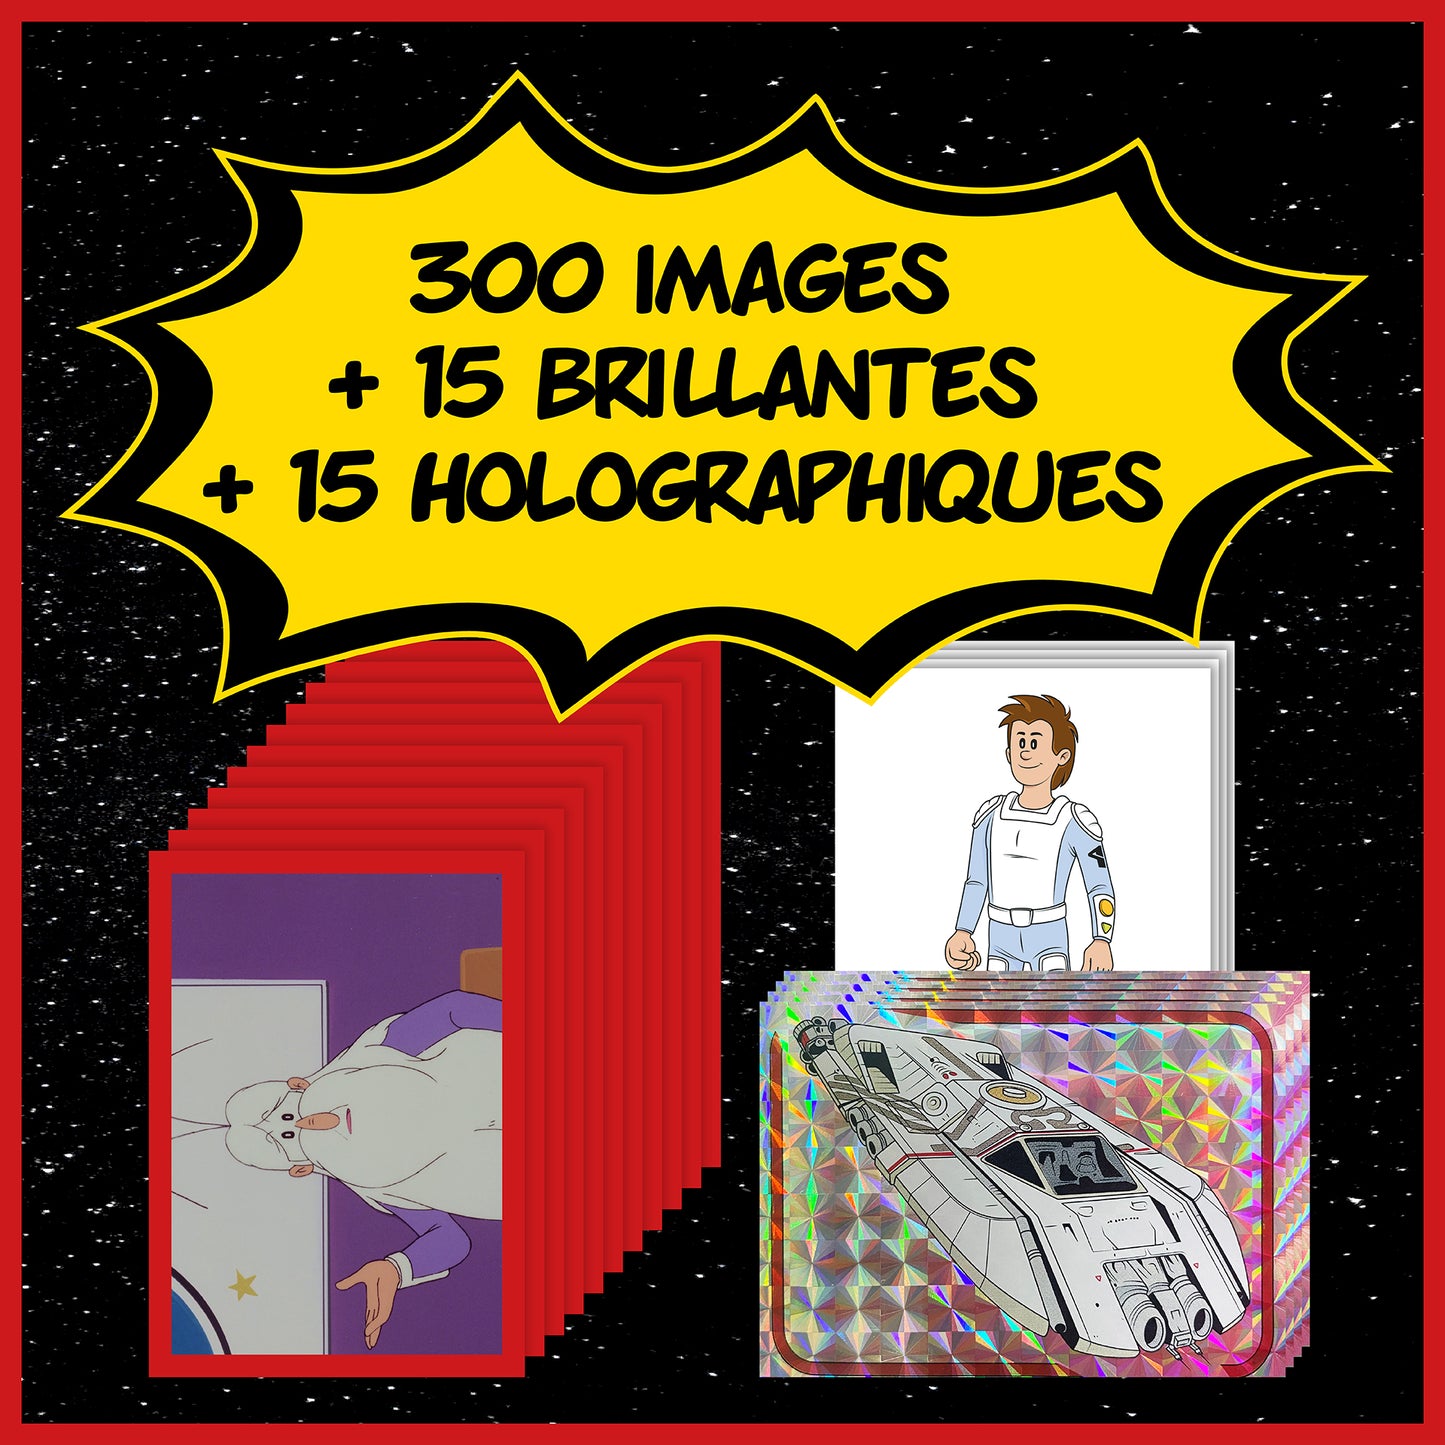 Album d'images + 55 paquets + 330 images + Boîte + Poster - La Revanche des Humanoïdes